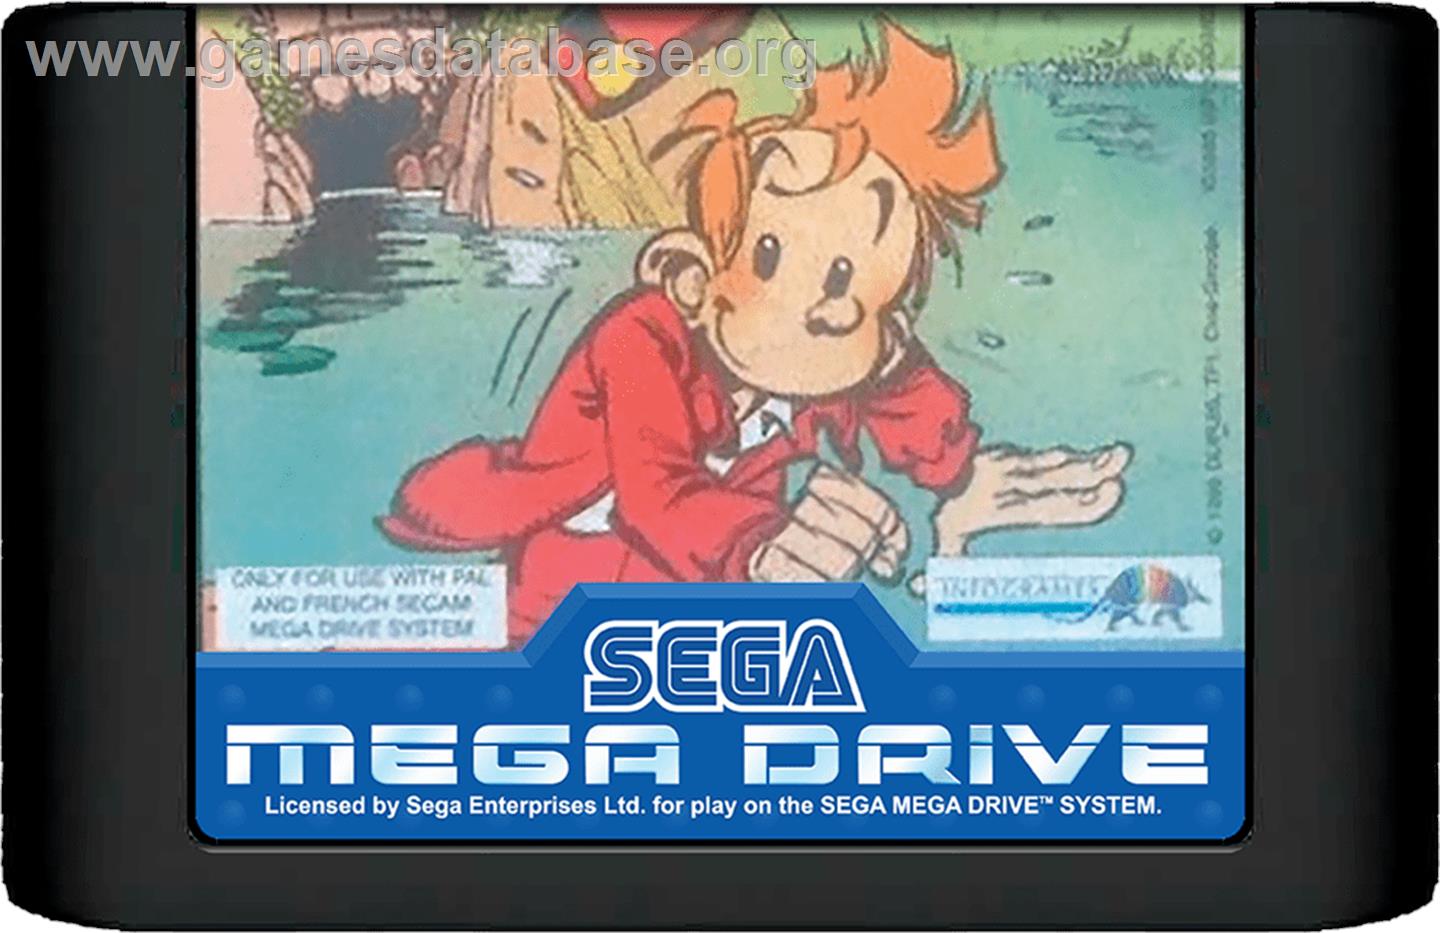 Spirou - Sega Genesis - Artwork - Cartridge